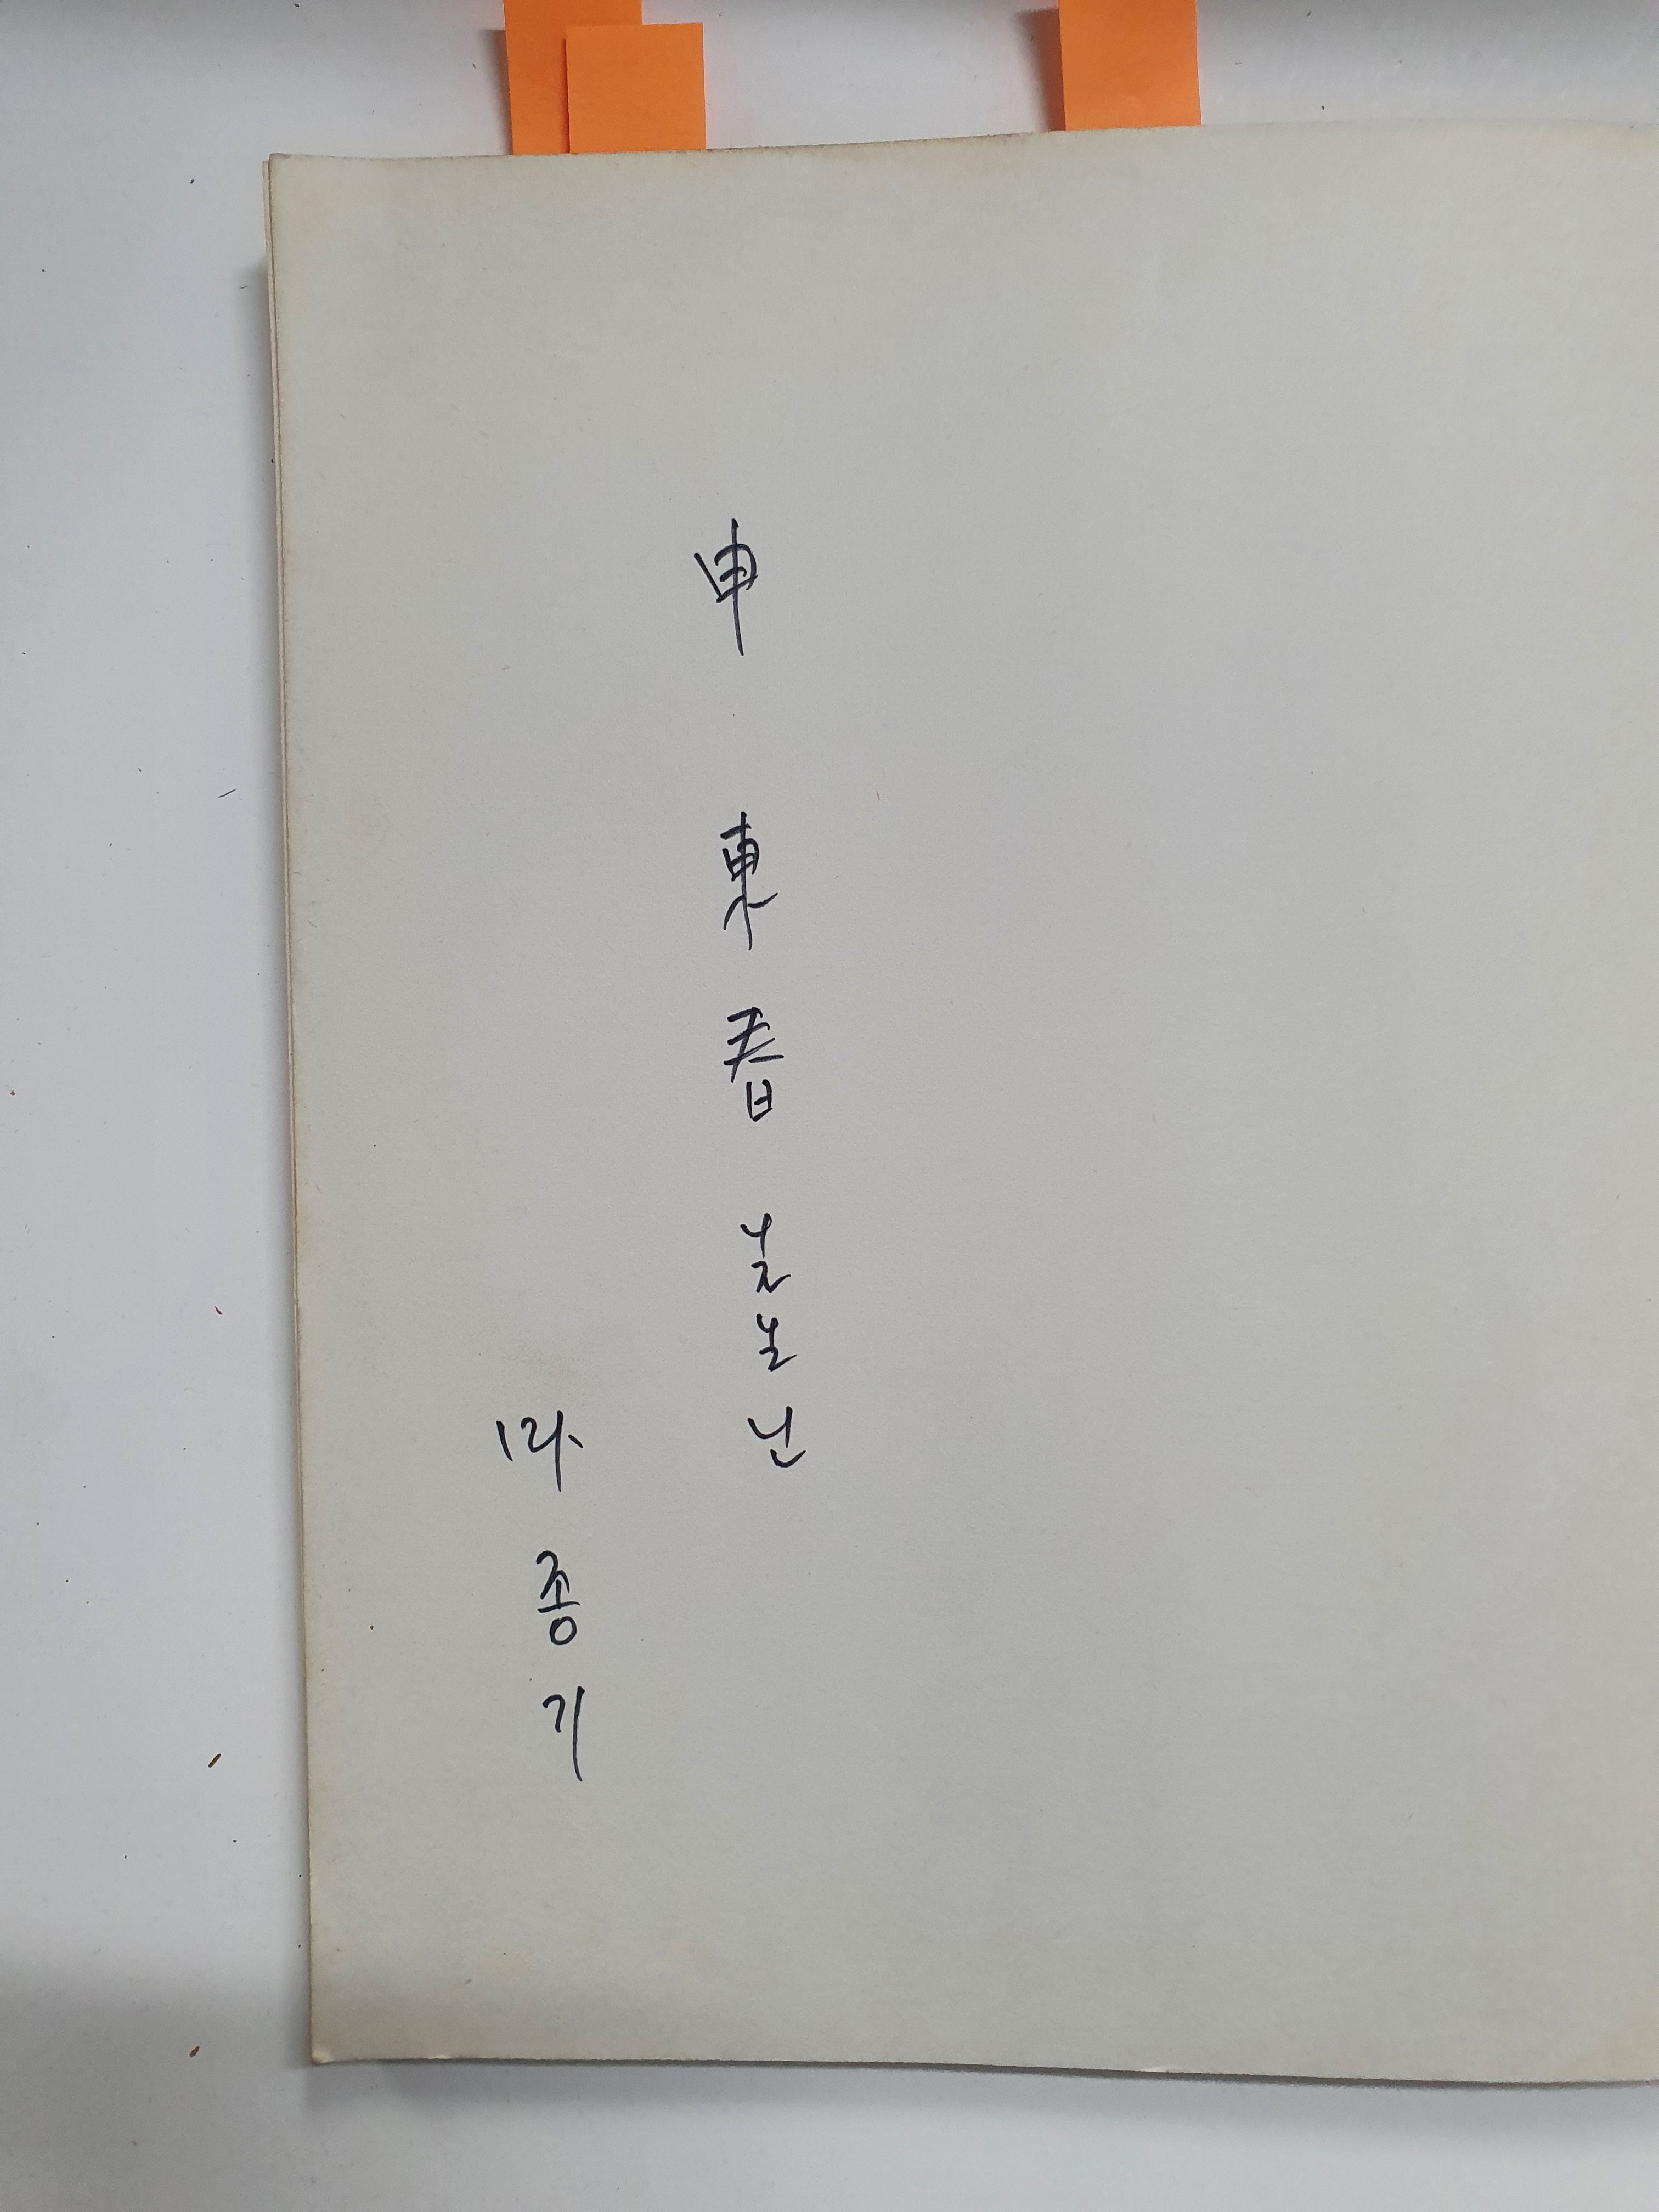 마종기 시집 [변경의 꽃] 초판 저자서명본